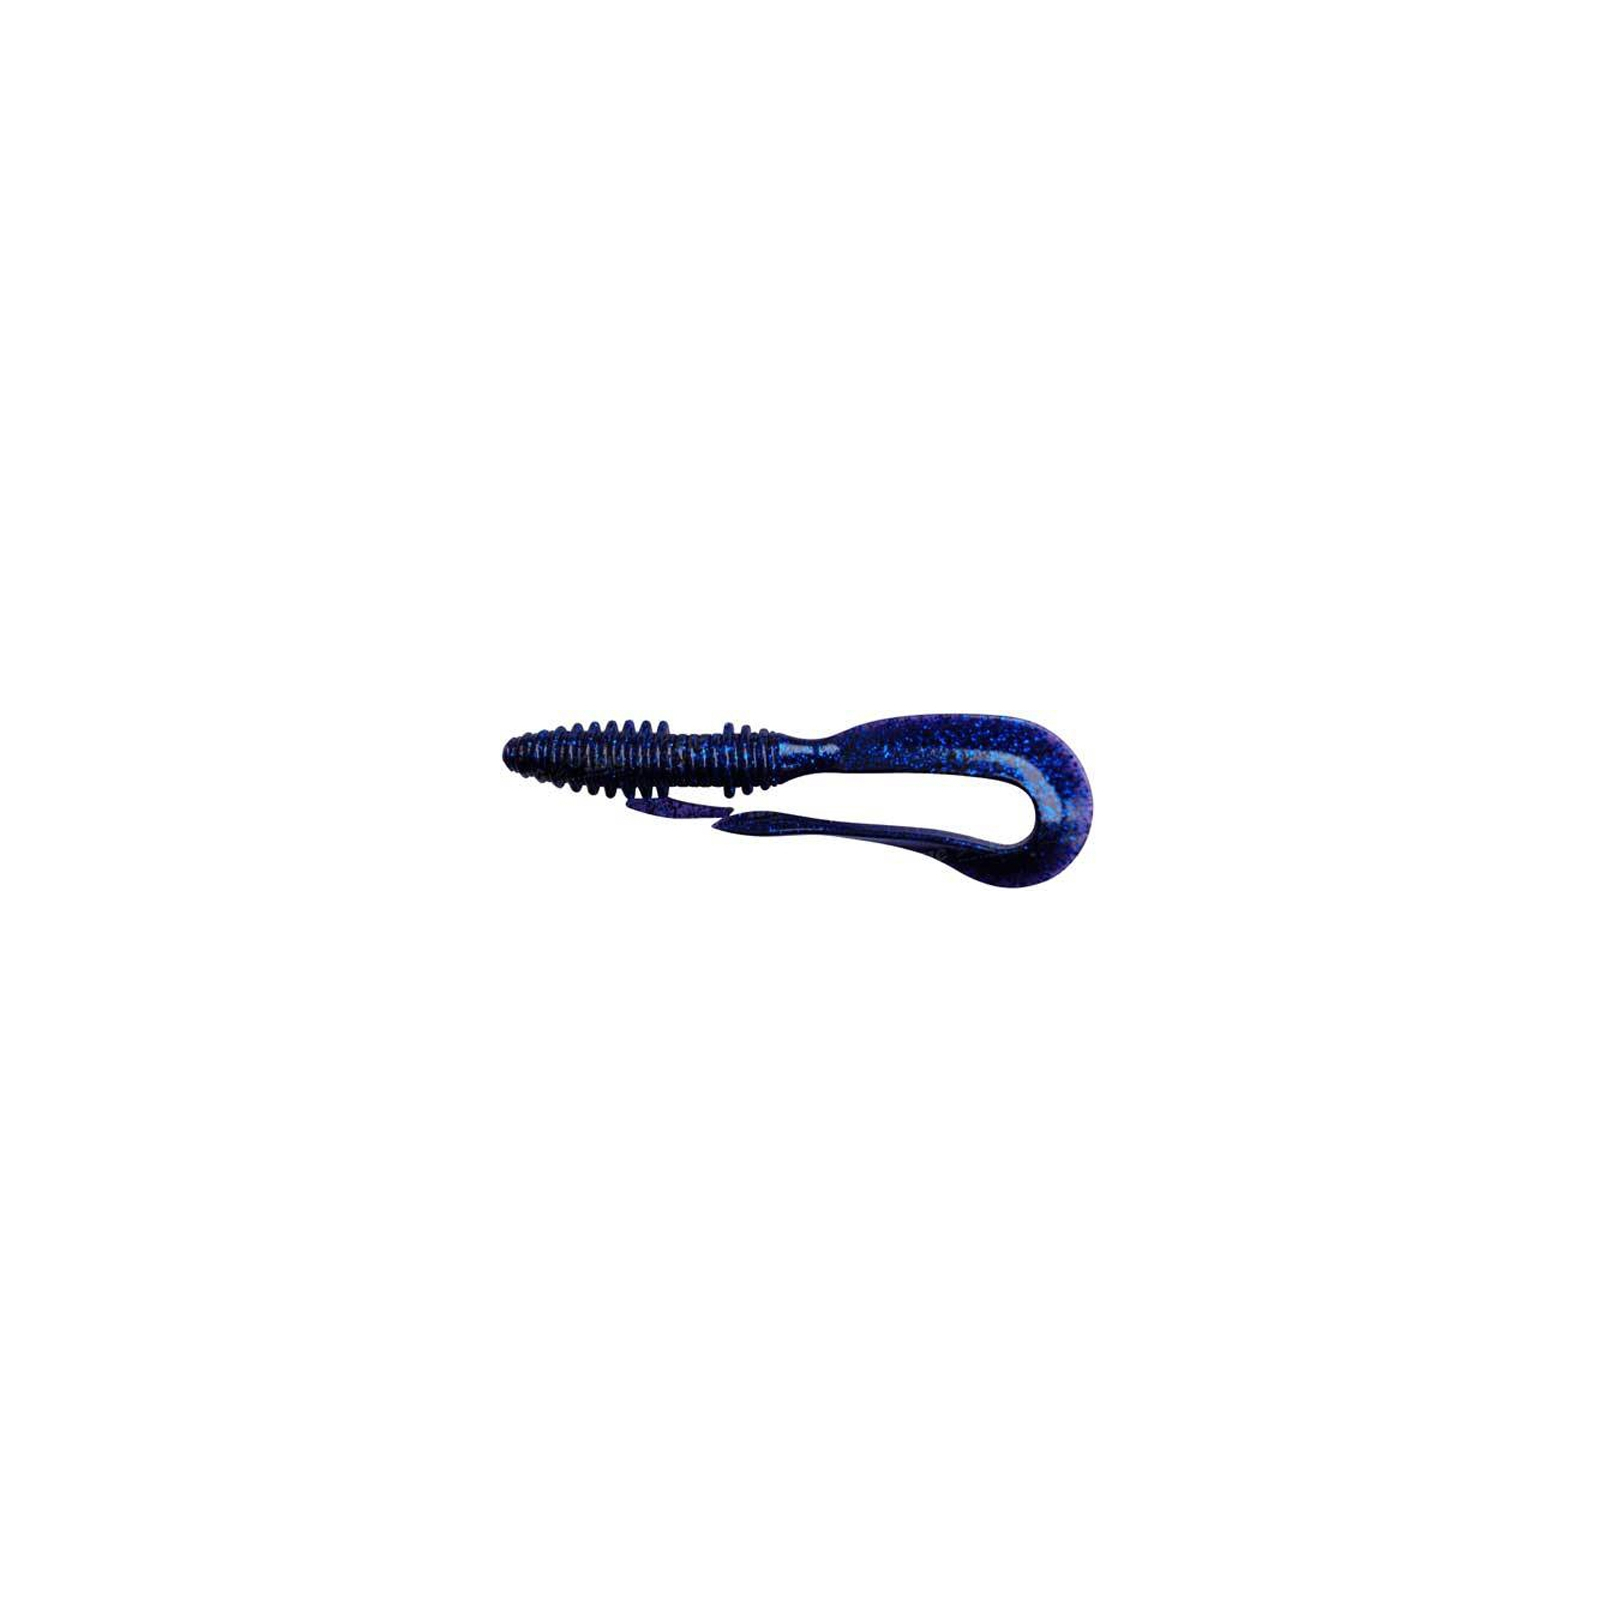 Силикон рыболовный Keitech Mad Wag 7" (6 шт/упак) ц:308 midnight blue (1551.01.92)